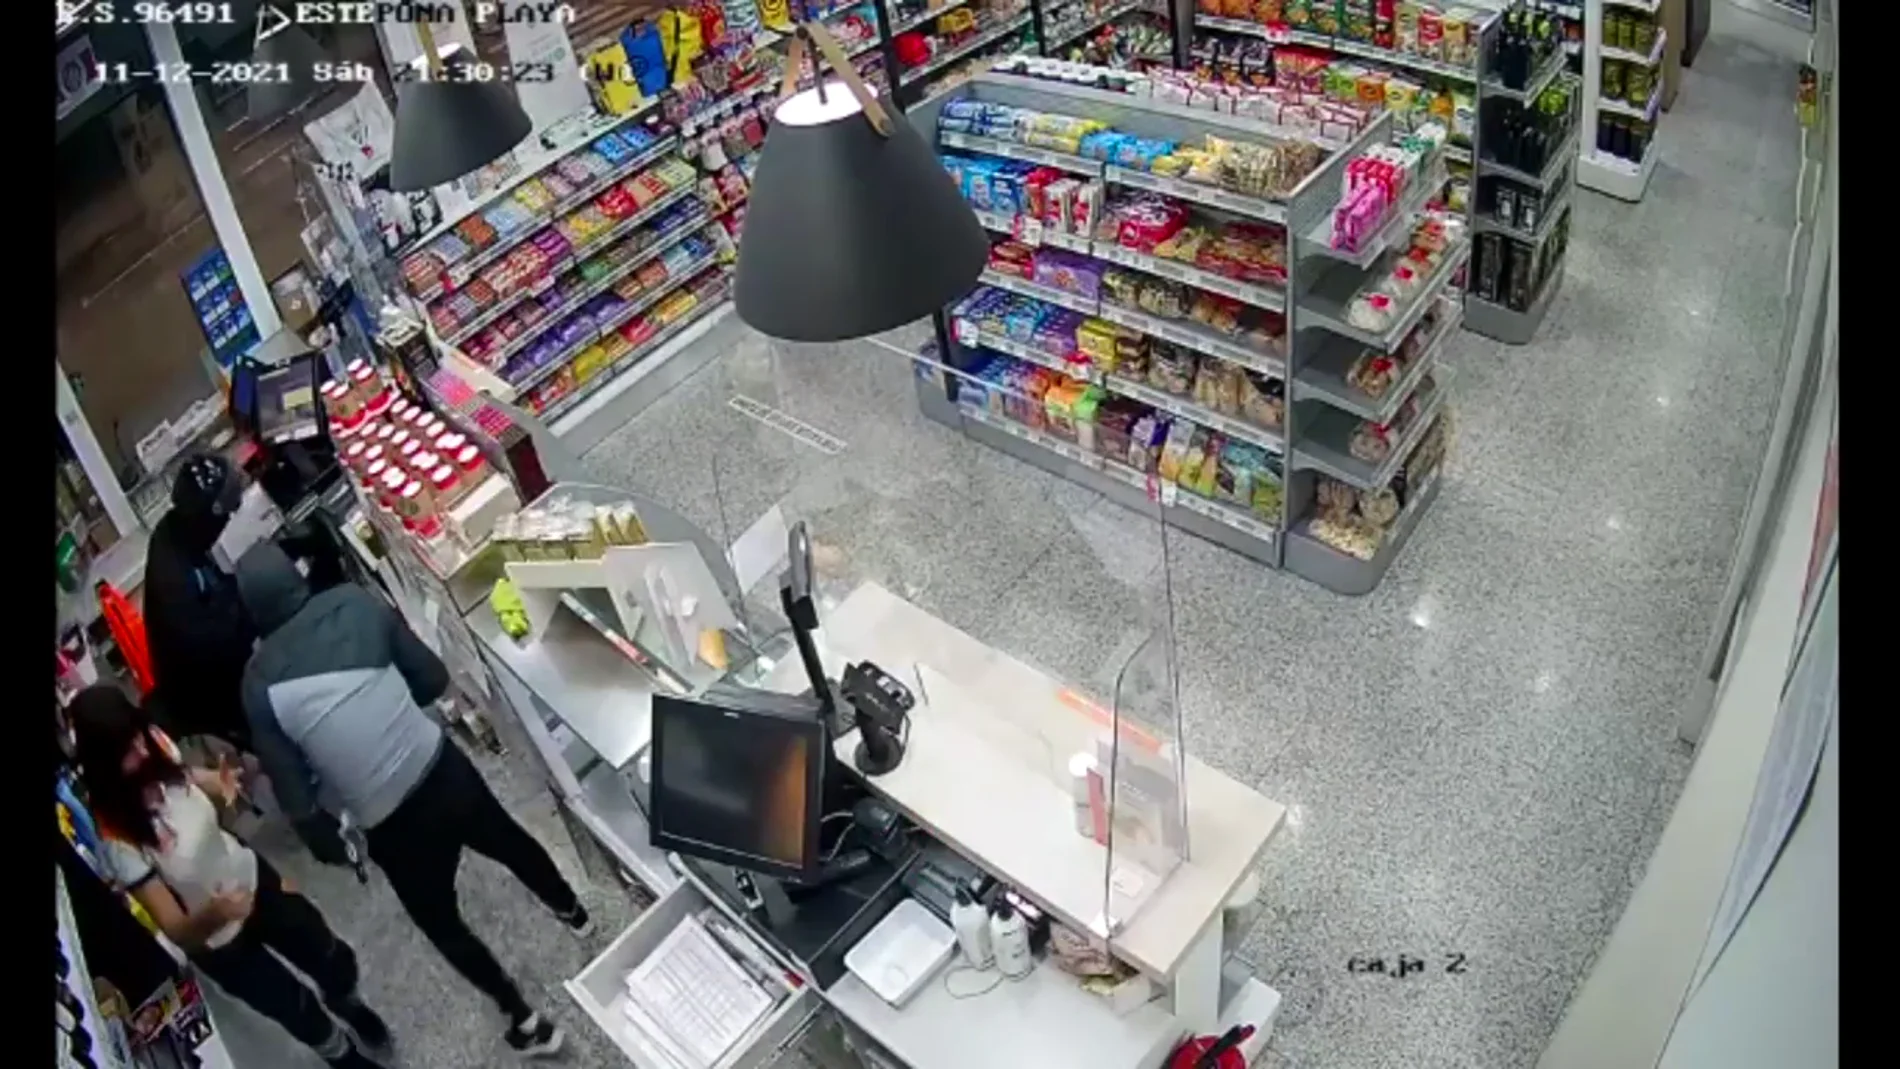 Cae una banda de atracadores de gasolineras: el vídeo de sus robos a punta de pistola